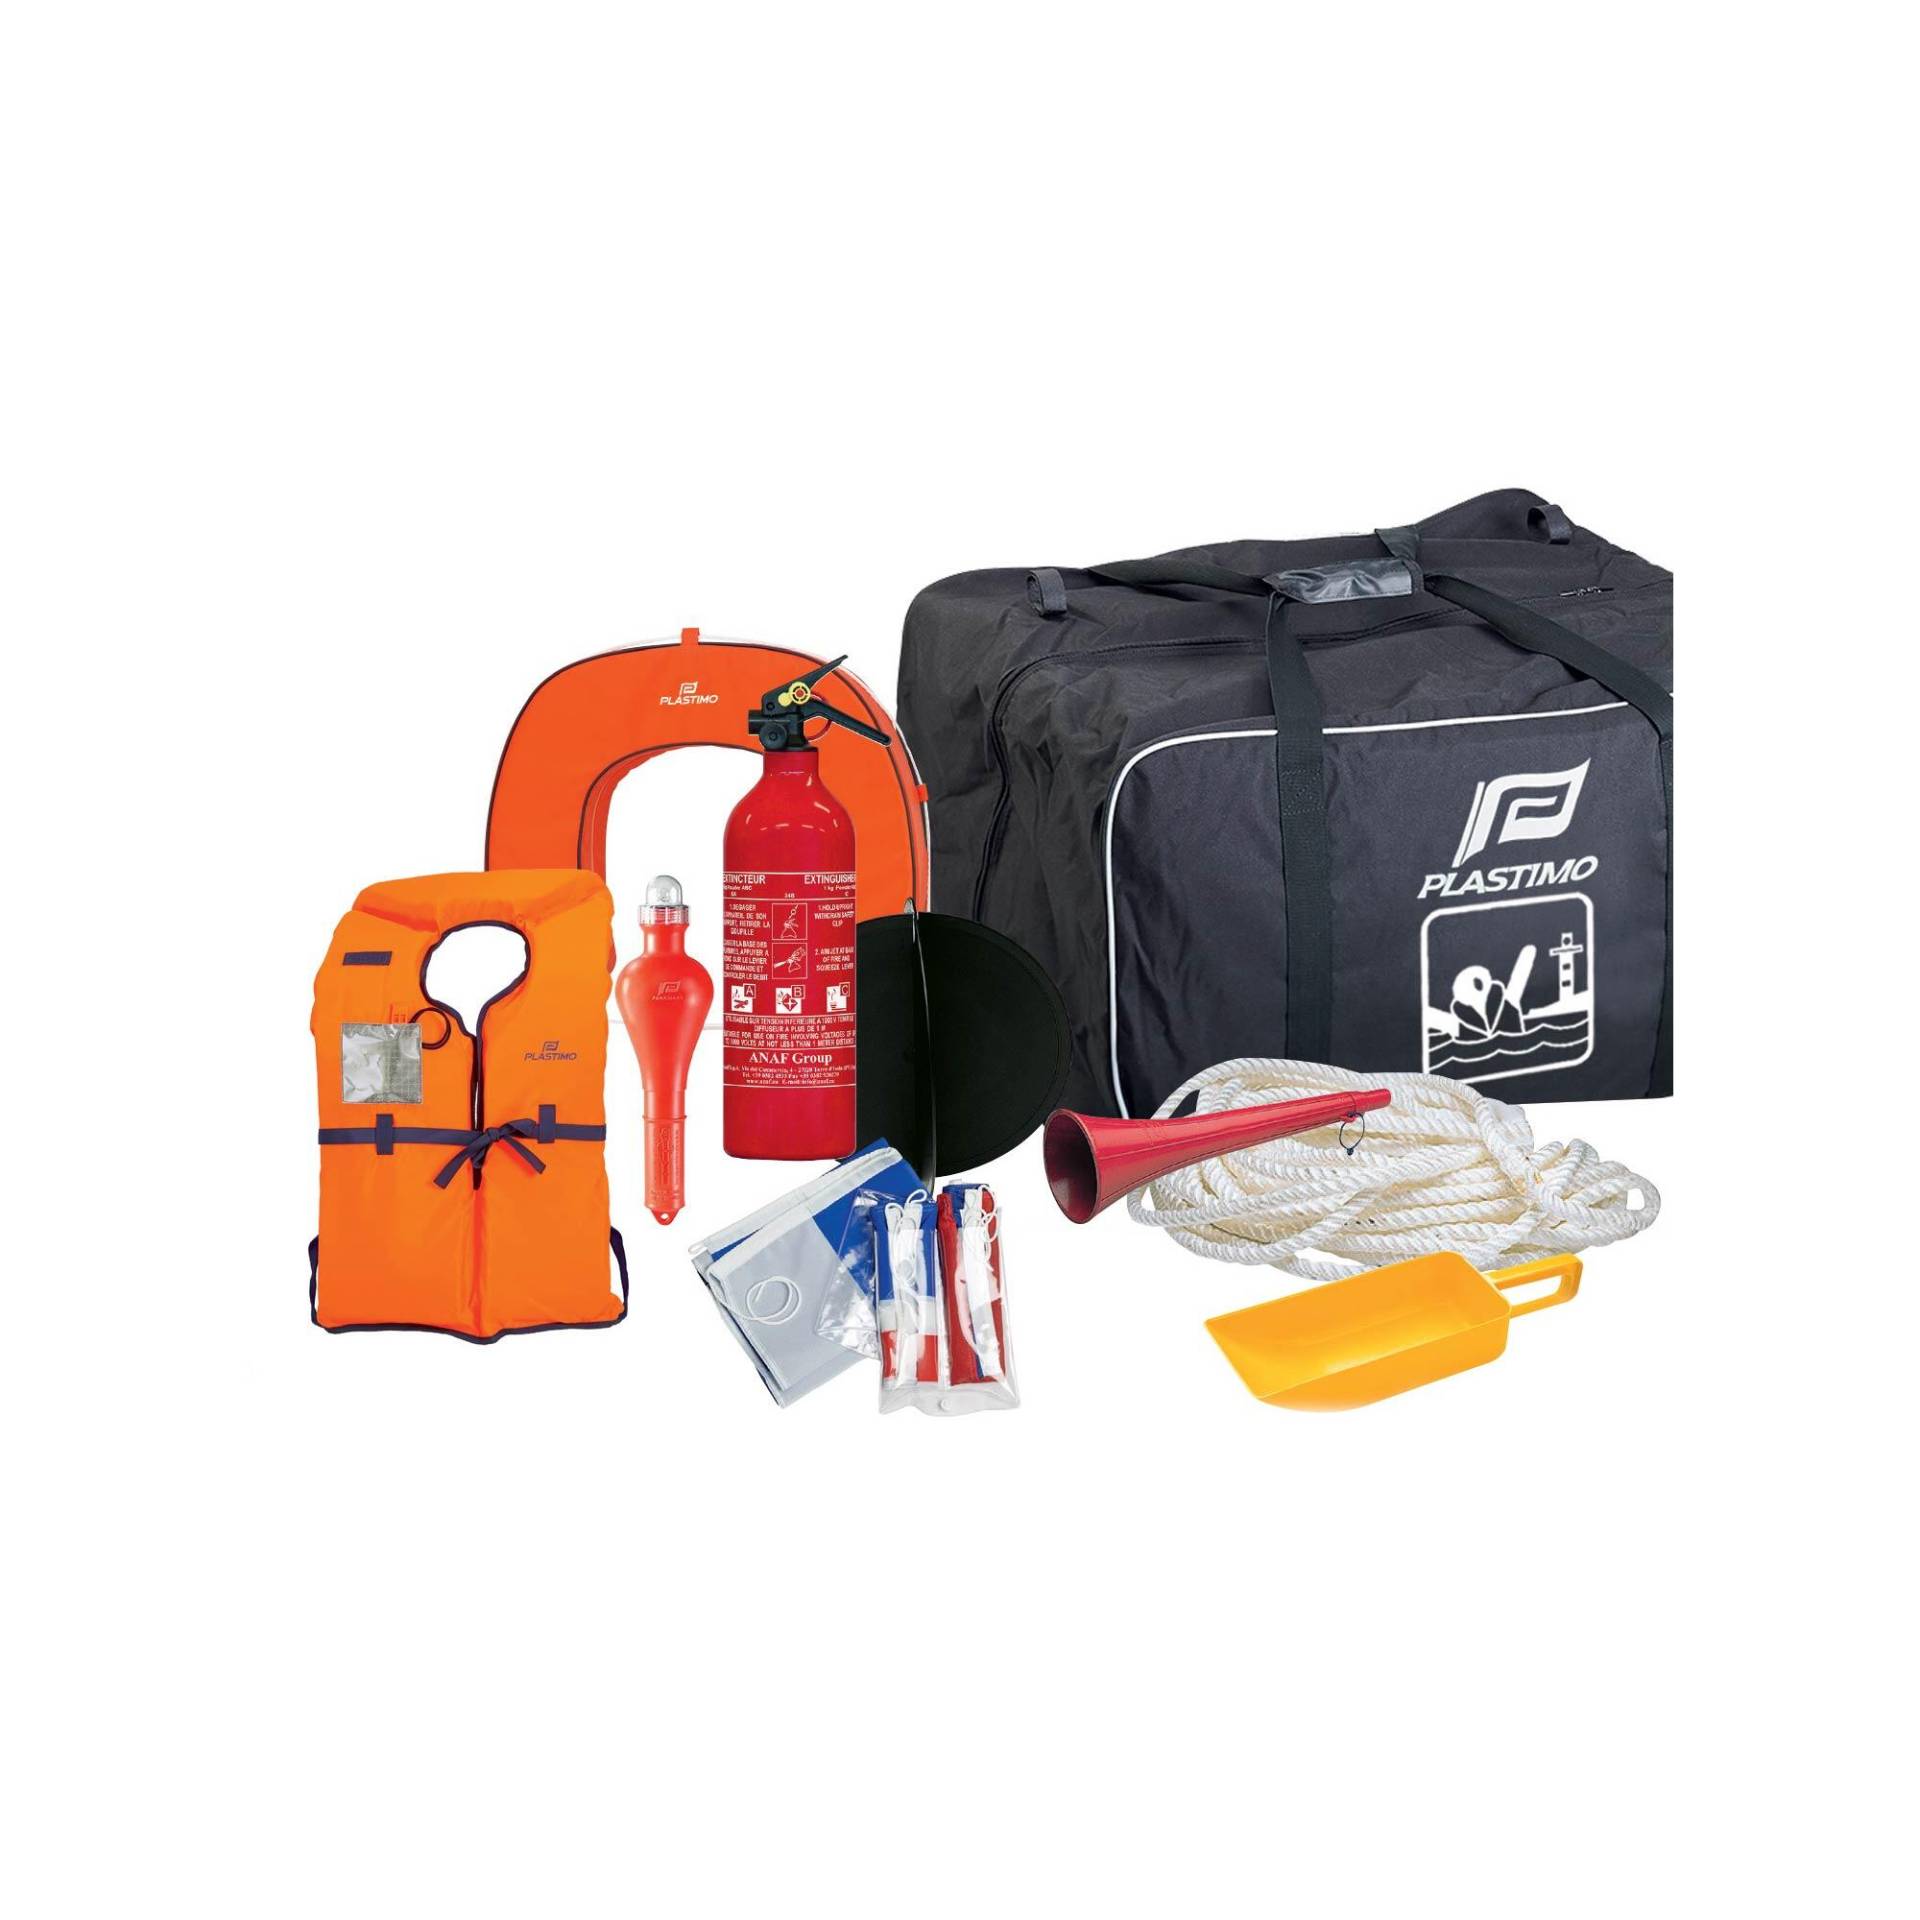 Tasche mit Sicherheitsausrüstung Segeln für 4 Personen bis 2-Meilen-Zone von PLASTIMO